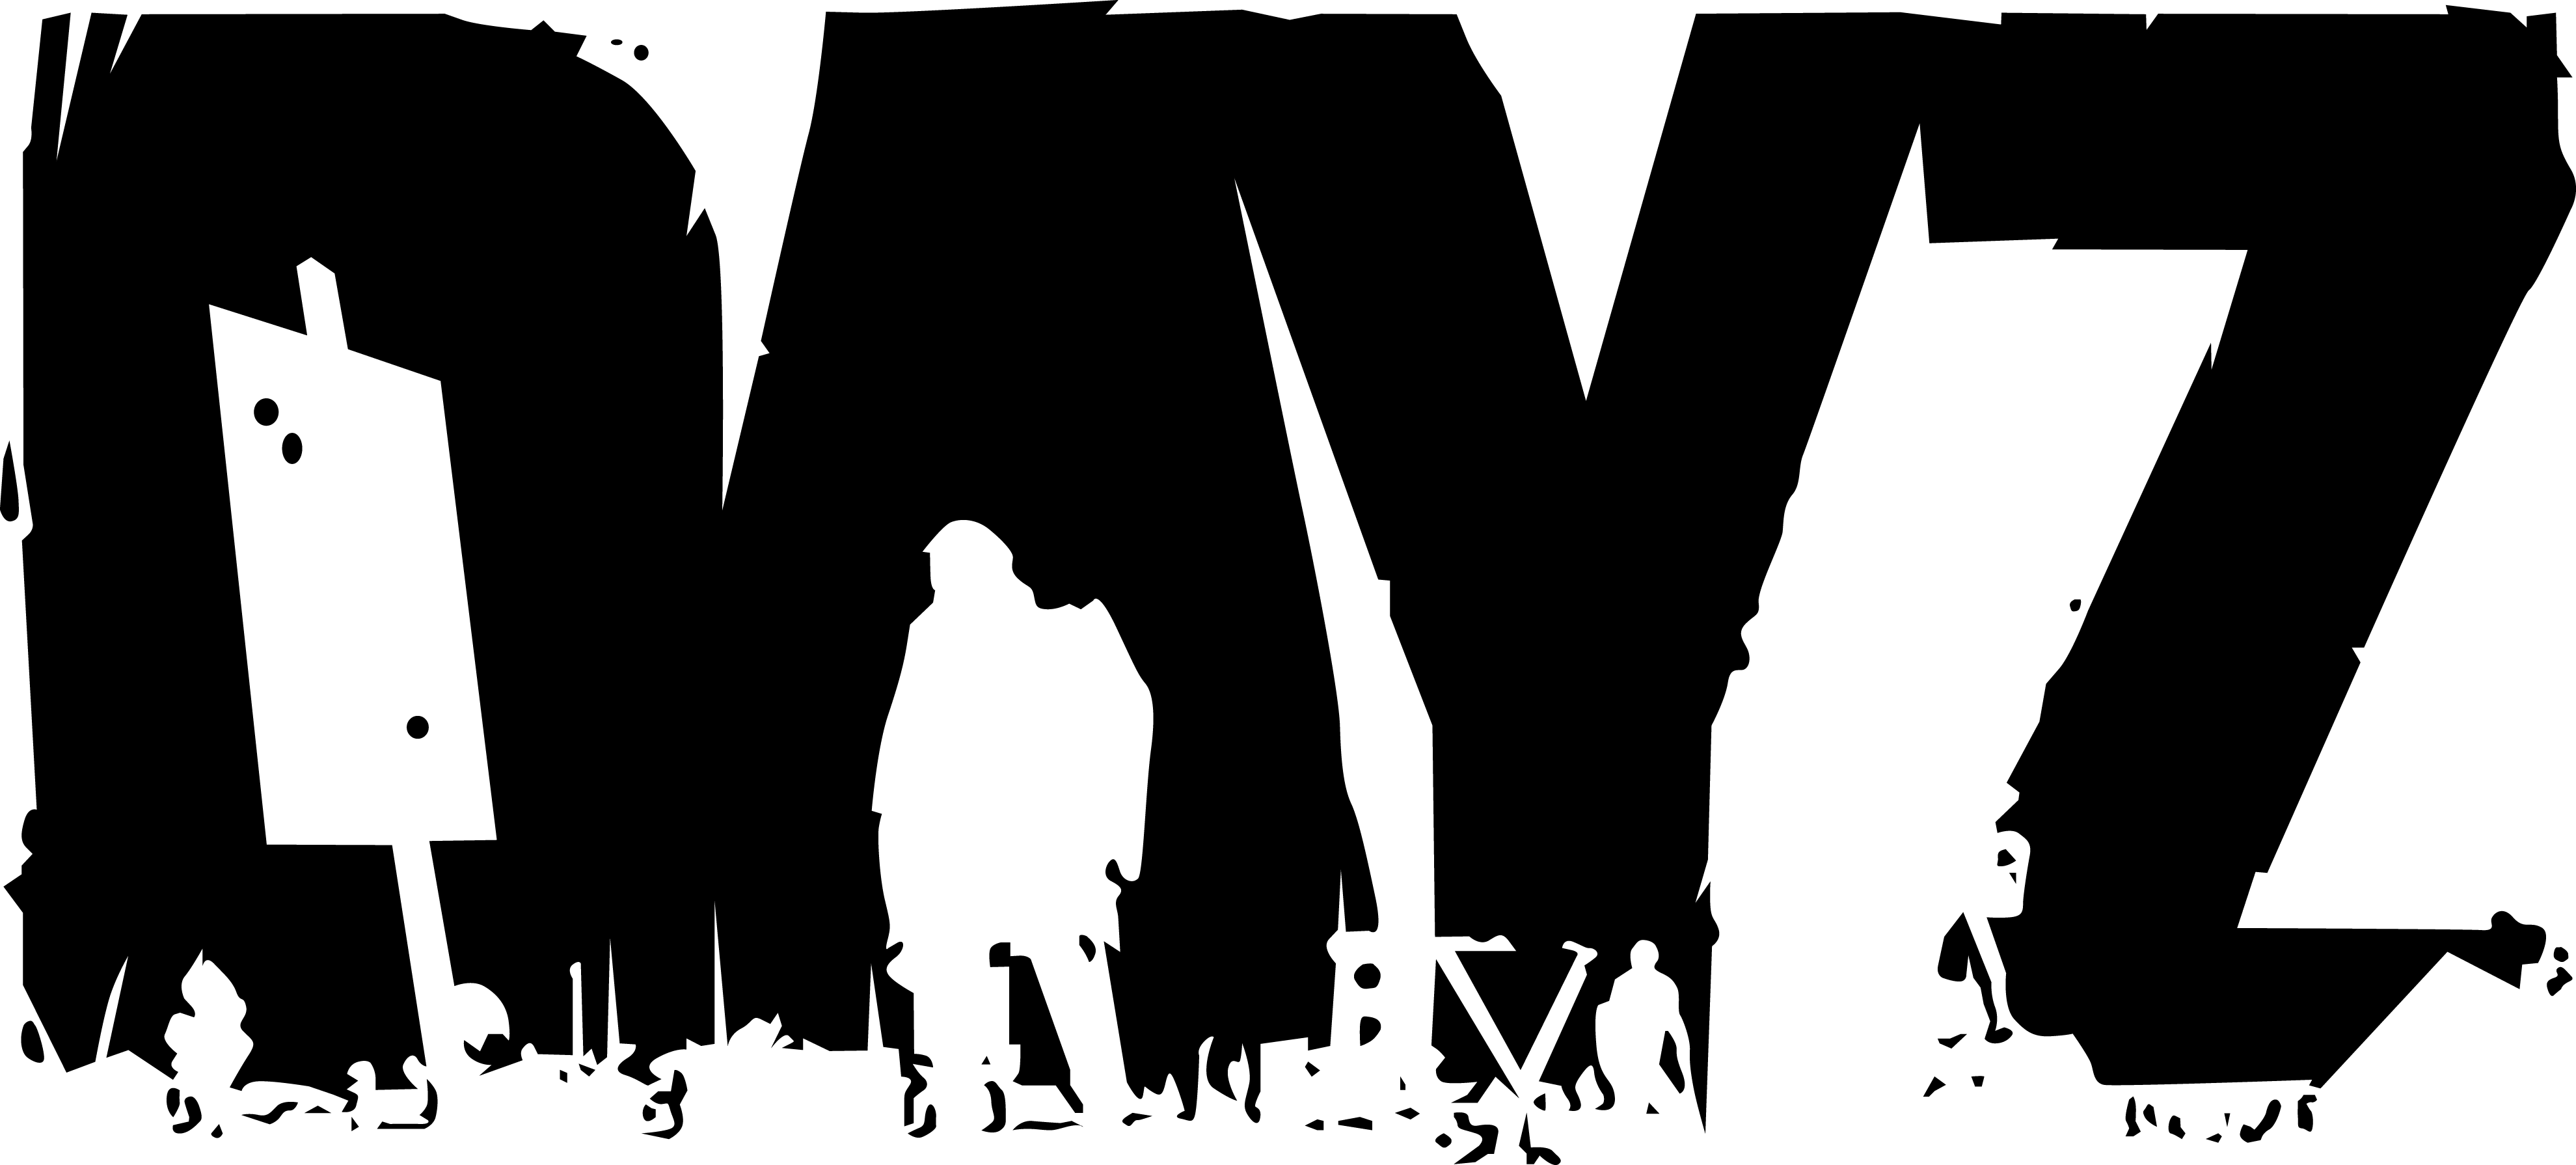 DayZ Logo Image